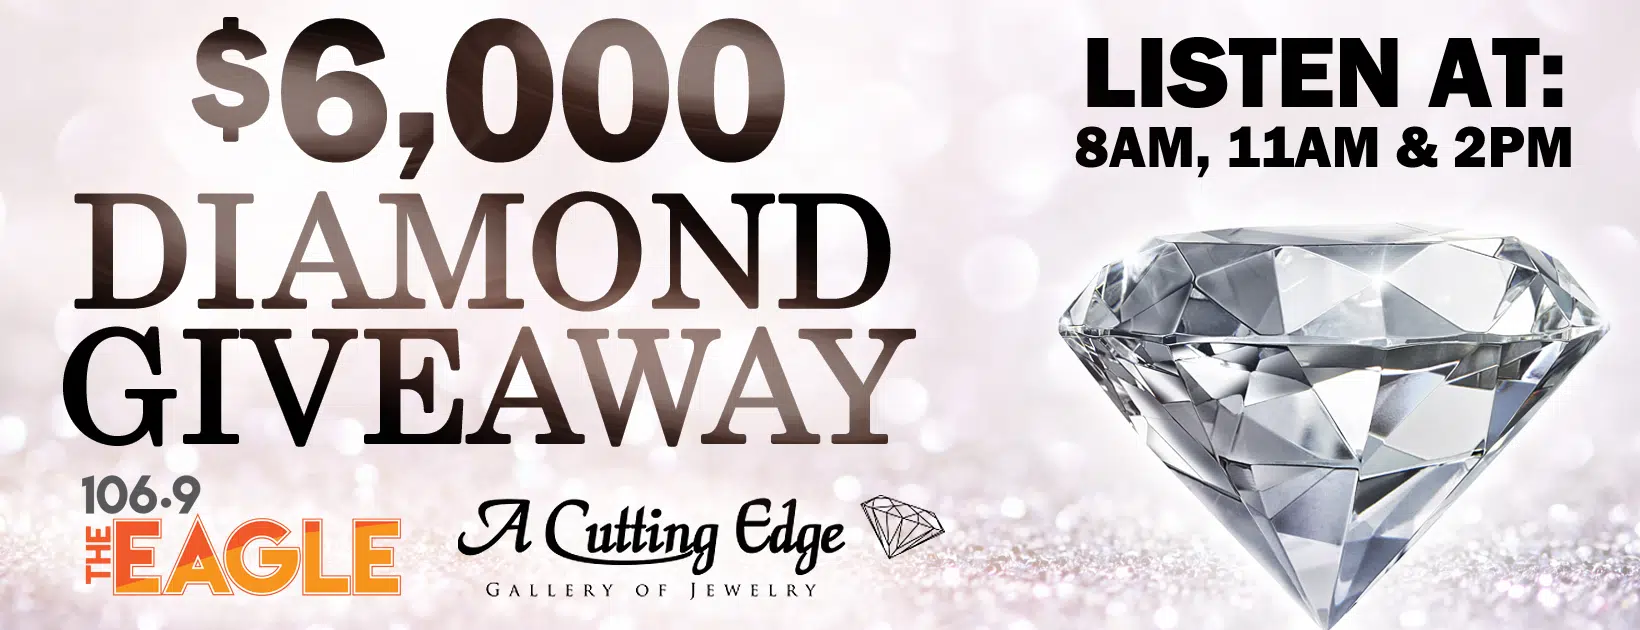 6000 Diamond Giveaway